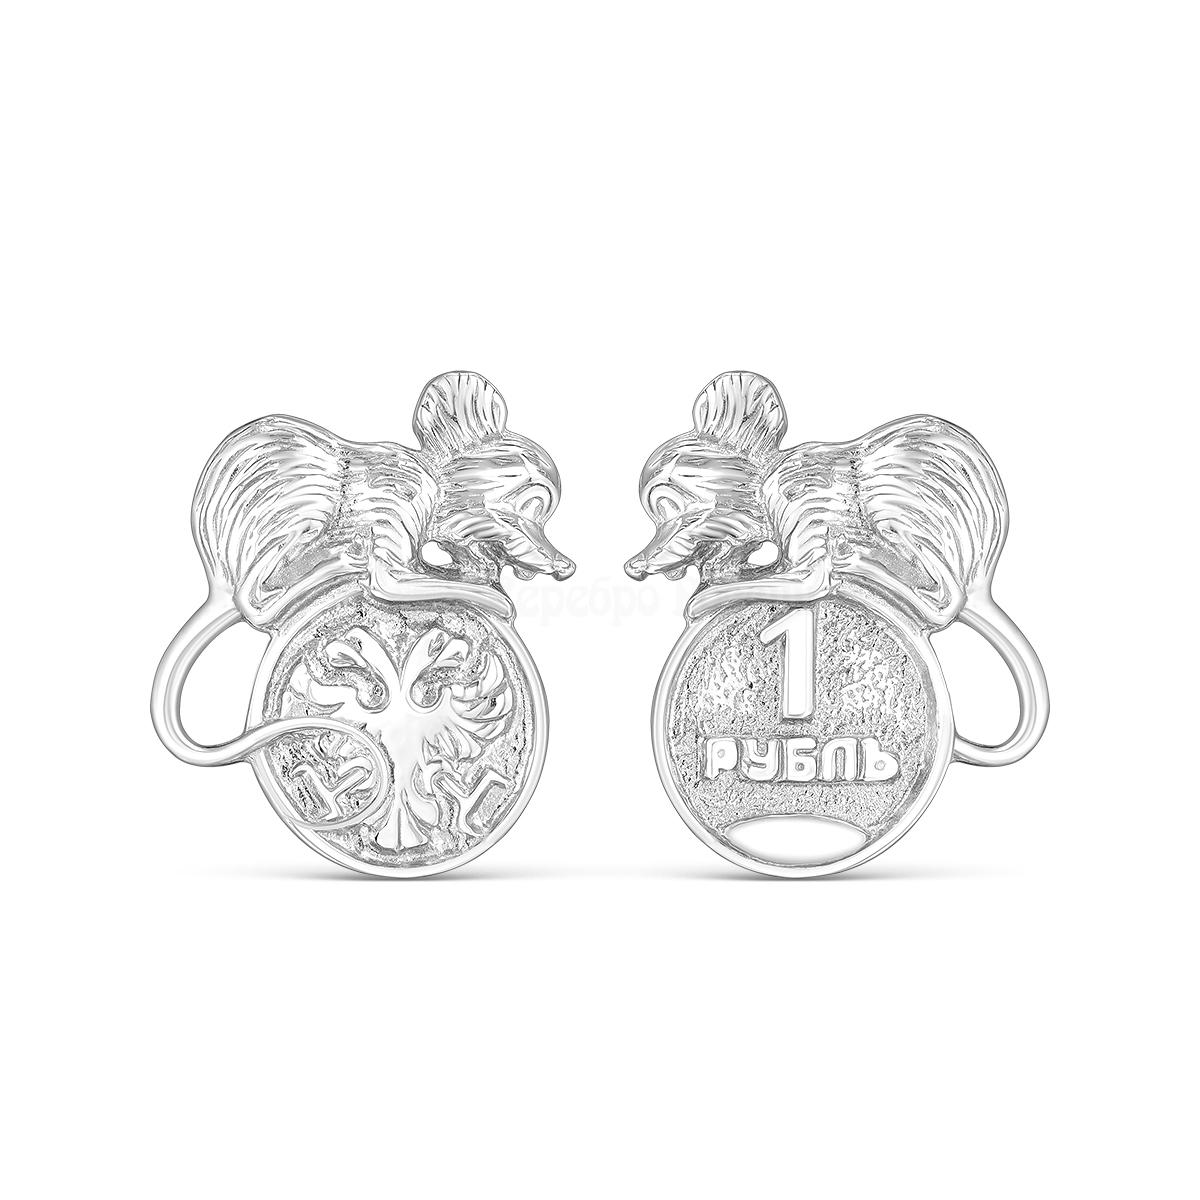 Сувенир из серебра родированный - Мышь кошельковая М-038р М-038р